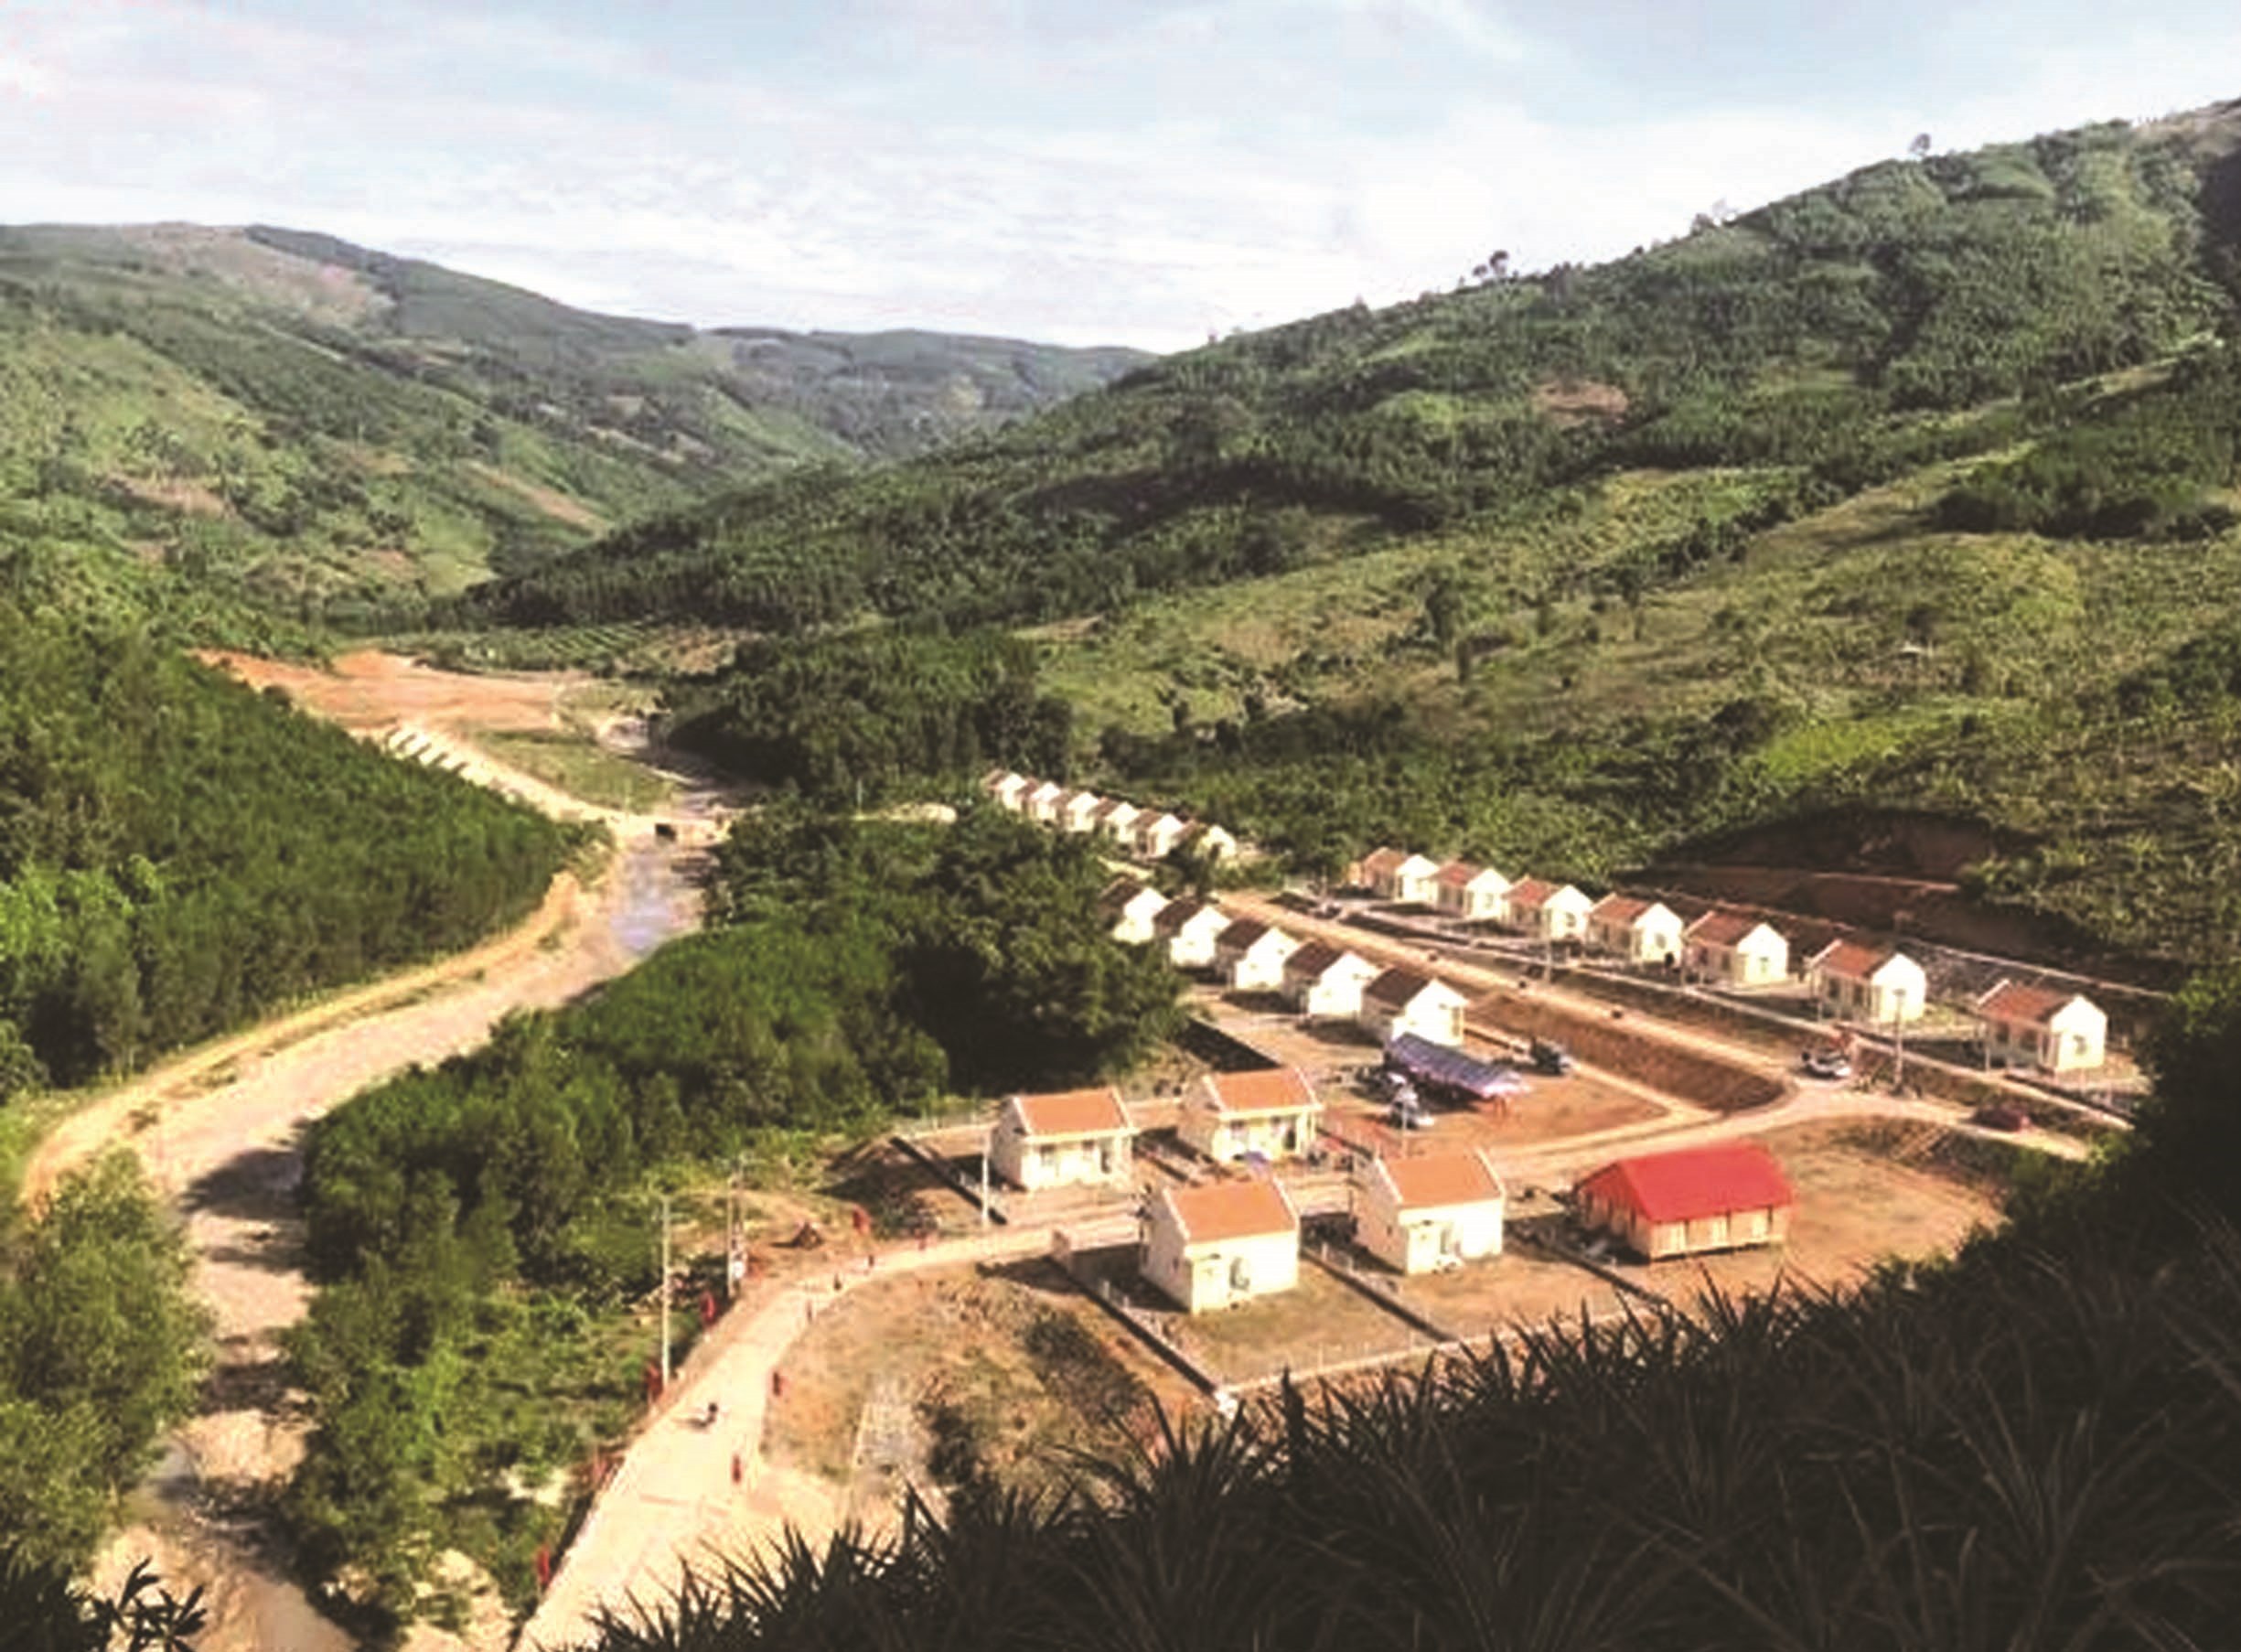 Nhờ sự đầu tư của Nhà nước, nhiều khu tái định cư cho đồng bào DTTS ở Khánh Sơn được xây dựng khang trang.